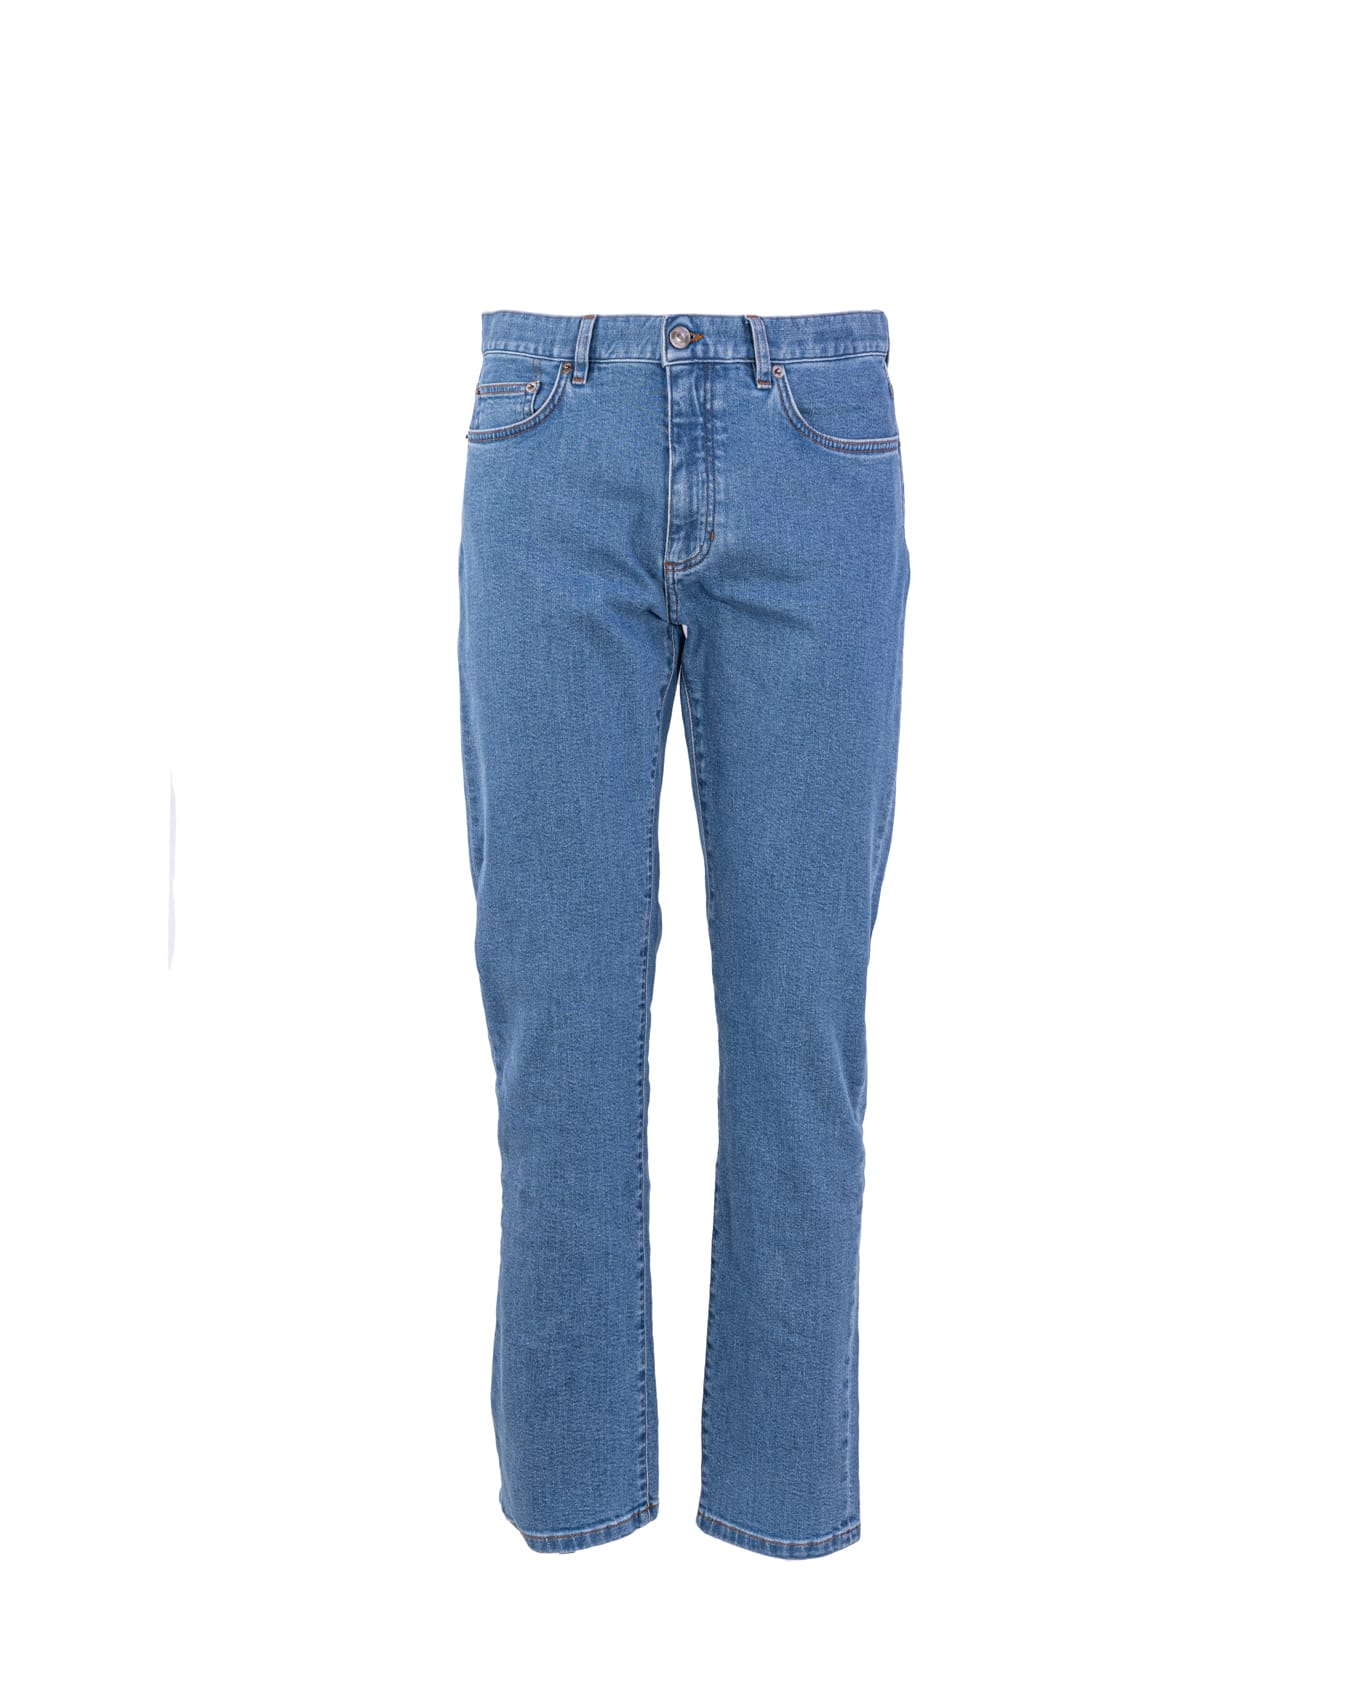 Ermenegildo Zegna Zegna 5-pocket jeans